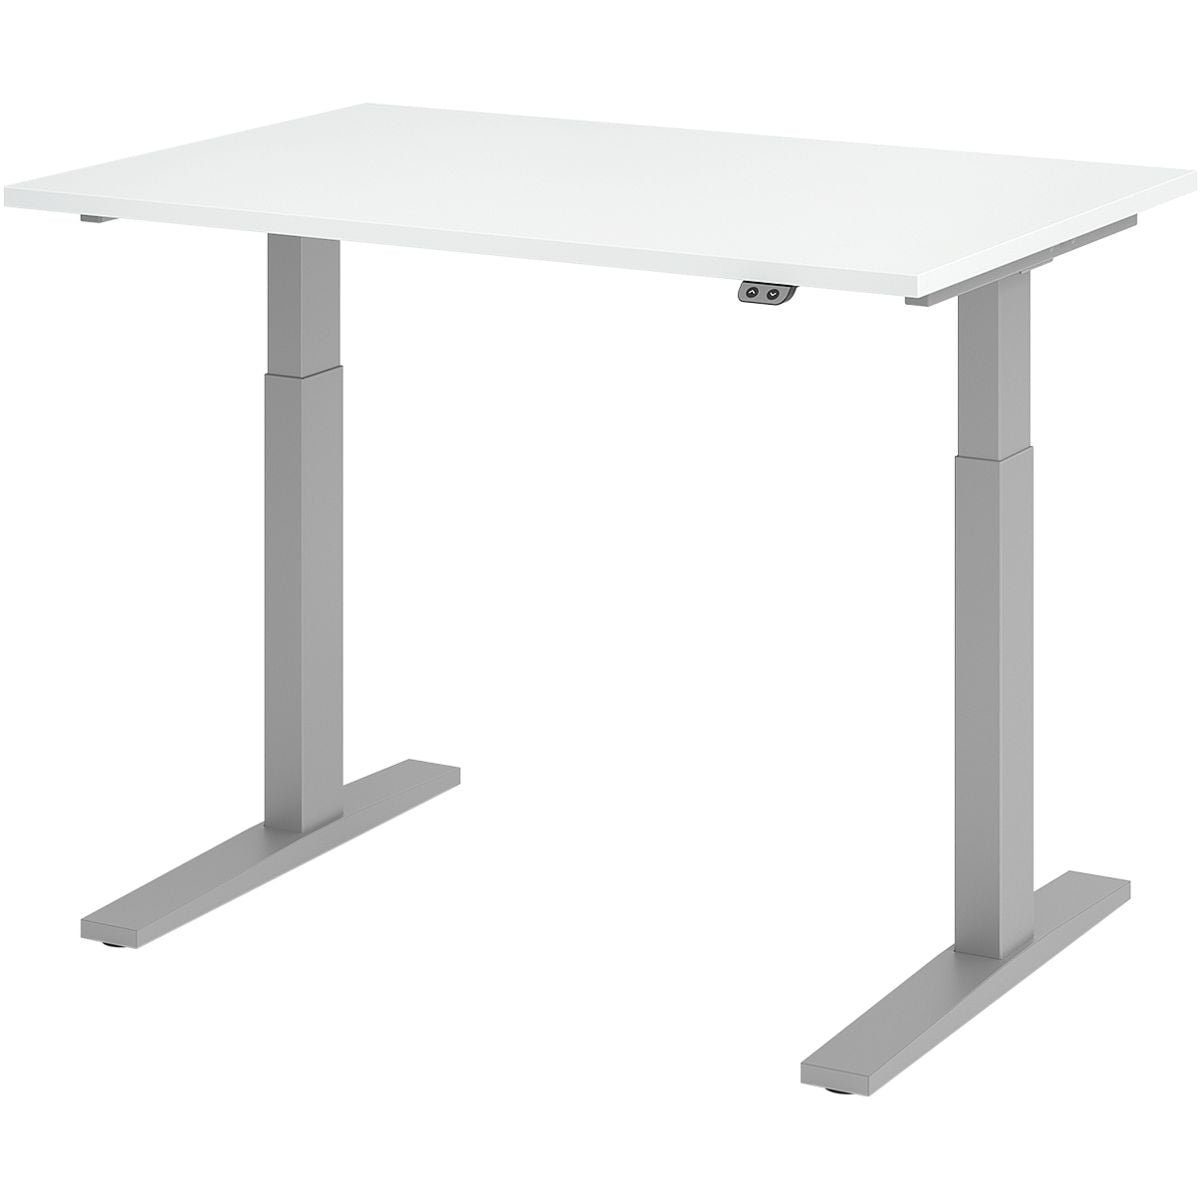 HAMMERBACHER Schreibtisch Upper Desk, elektrisch höhenverstellbar bis 120 cm, Gestell silberfarben weiß